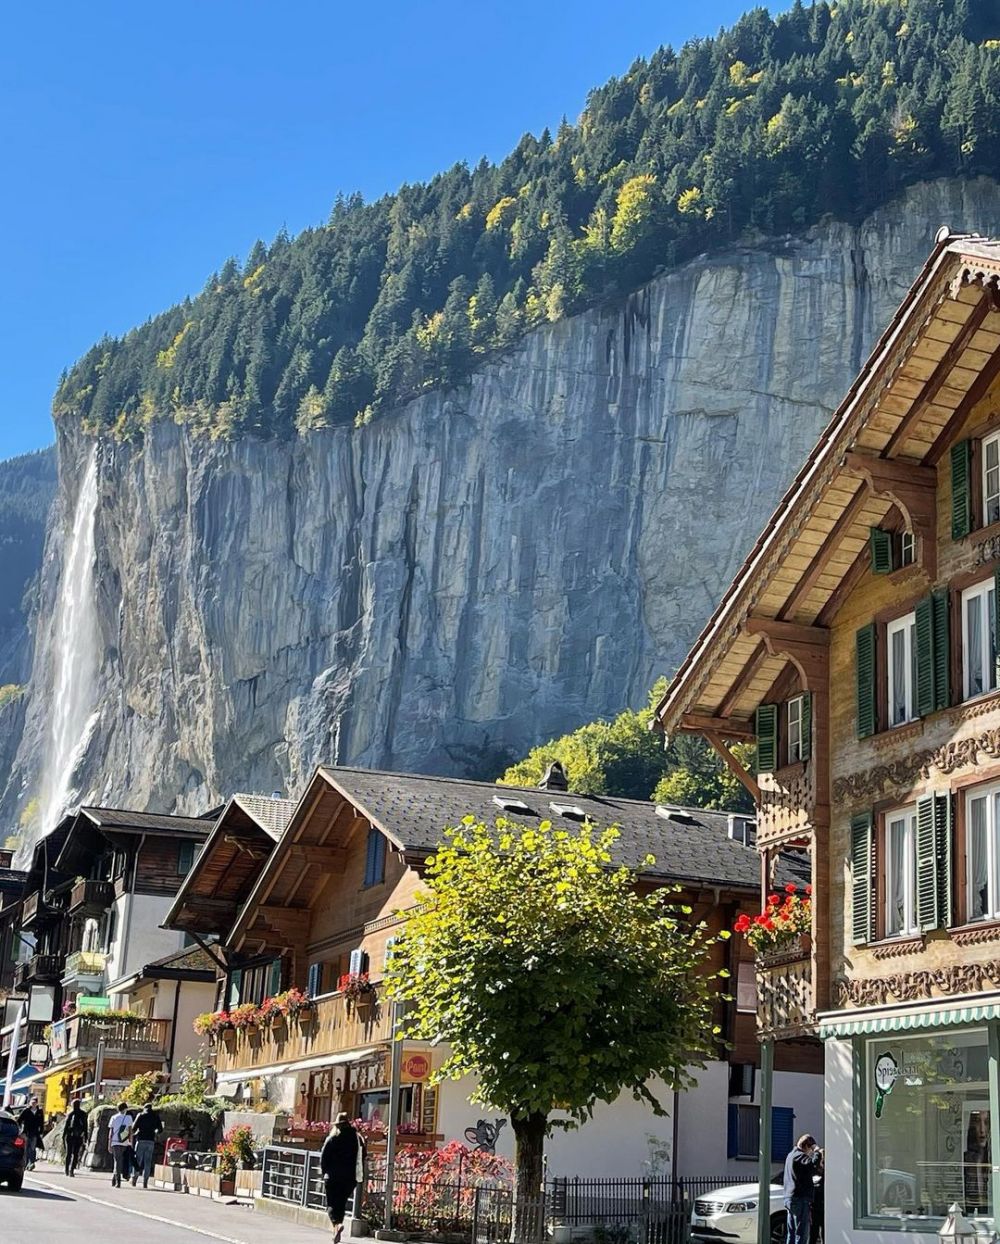 17 Rekomendasi Tempat Wisata ala Ira Wibowo, Puas Keliling Swiss